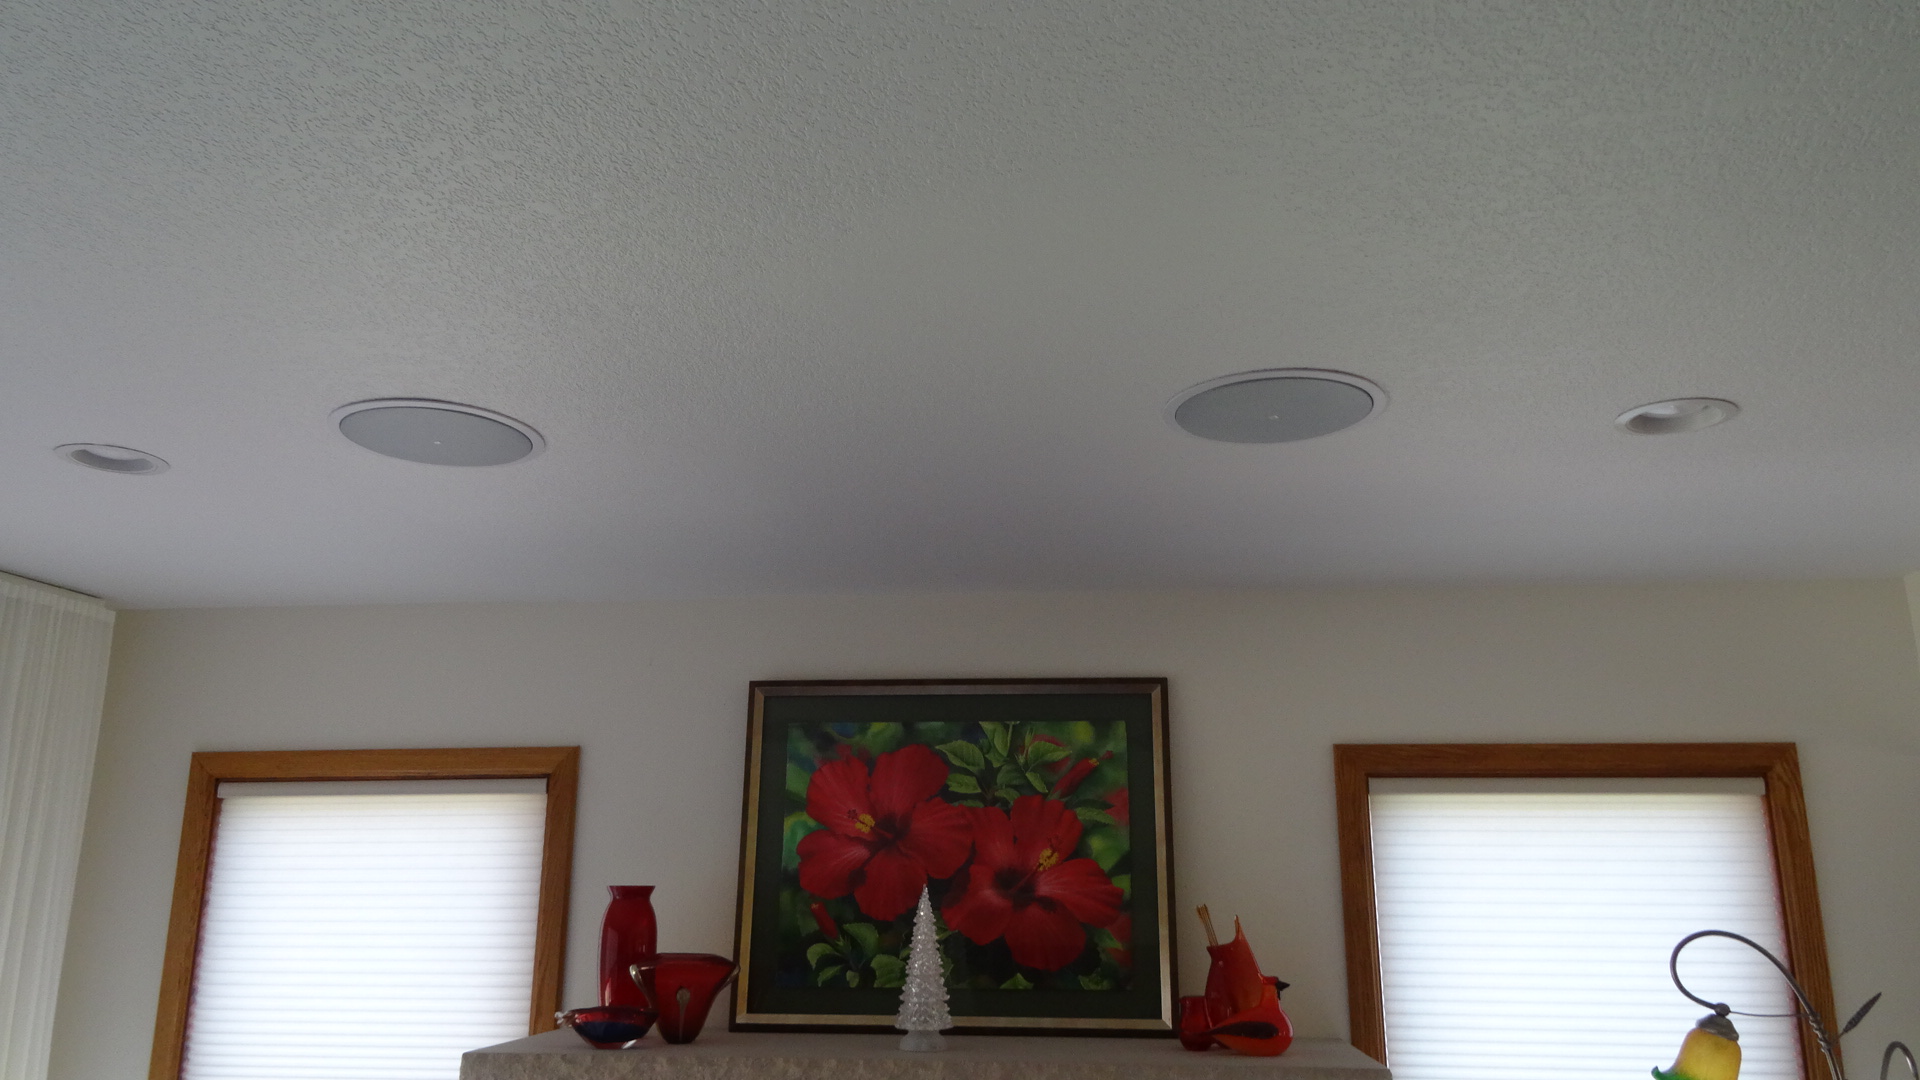 JBL Living room ceiling speakers